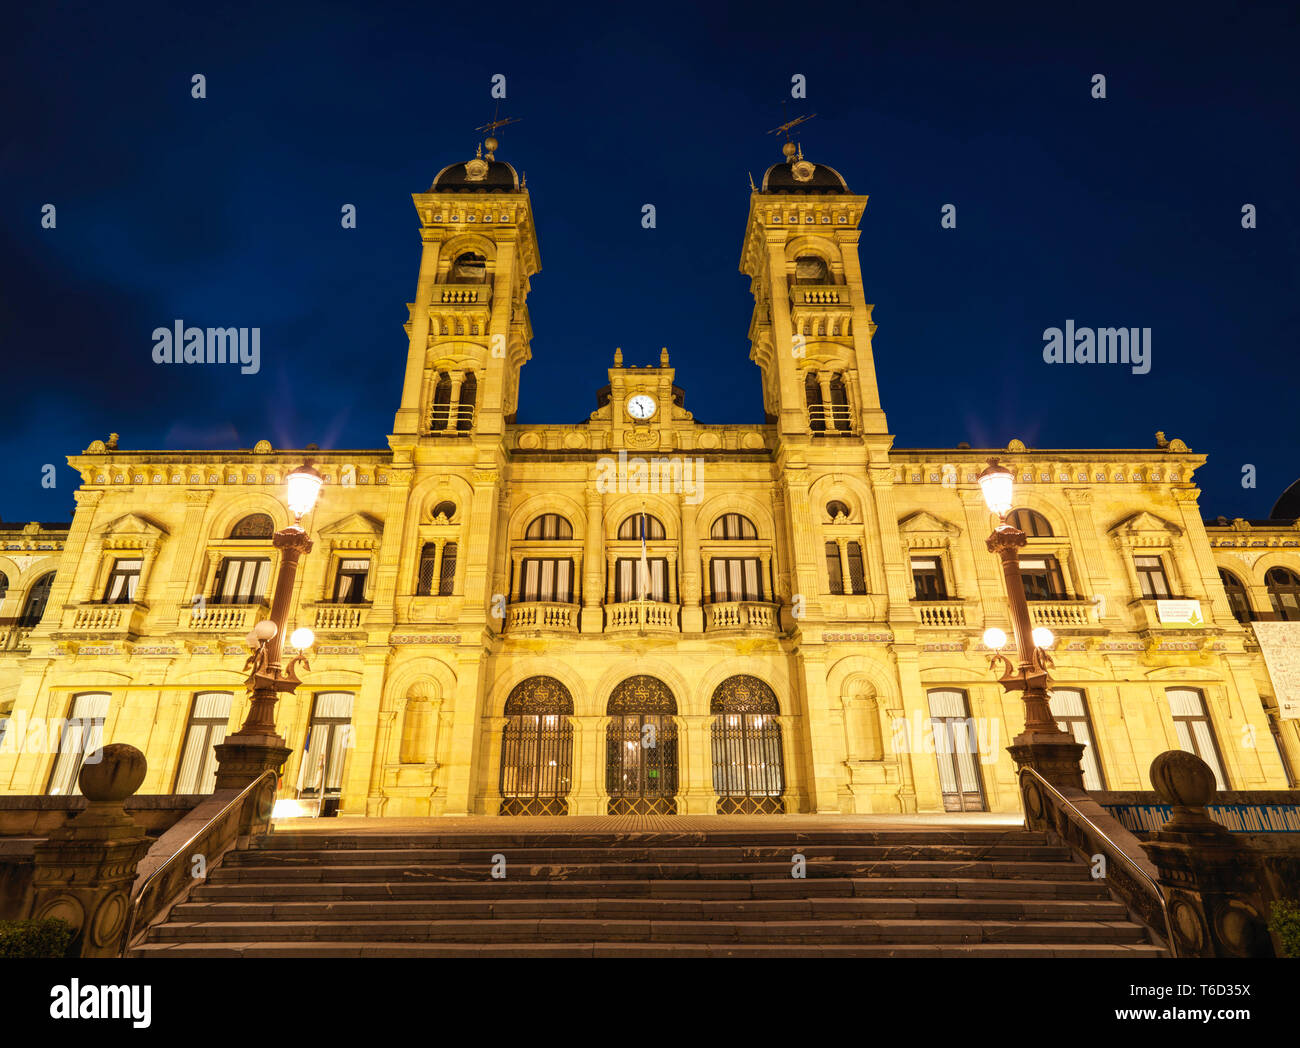 Espagne, Pays Basque, San Sebastian (Donostia), de l'hôtel de ville illuminée la nuit Banque D'Images